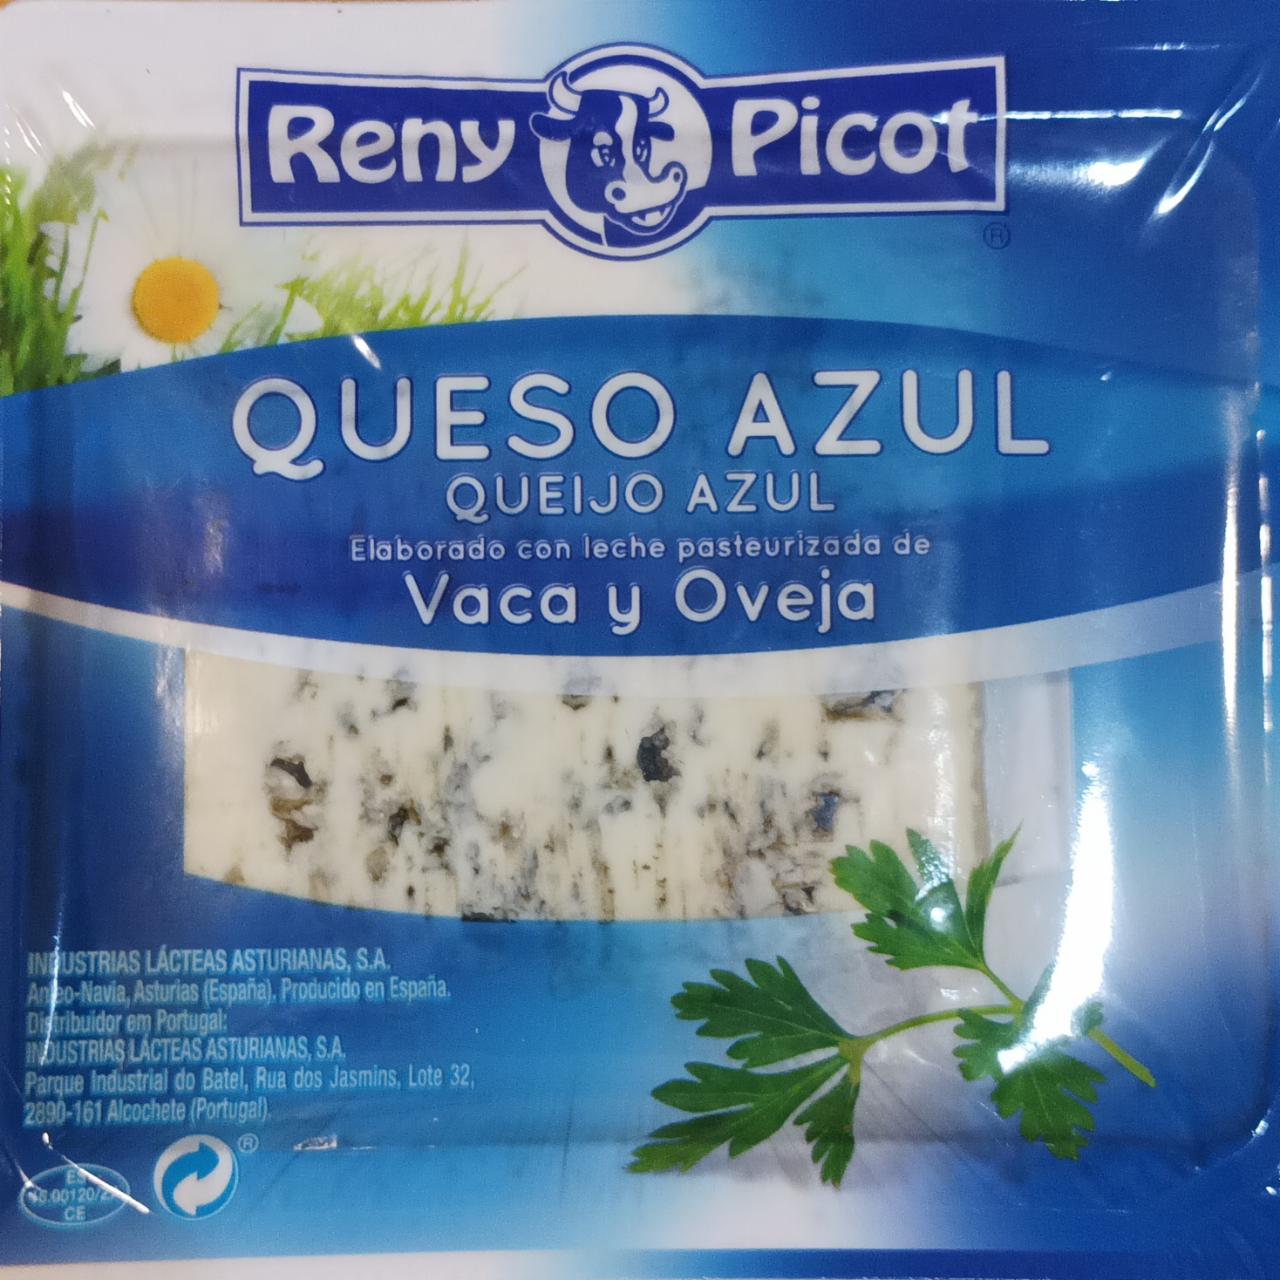 Fotografie - Queso Azul Reny Picot